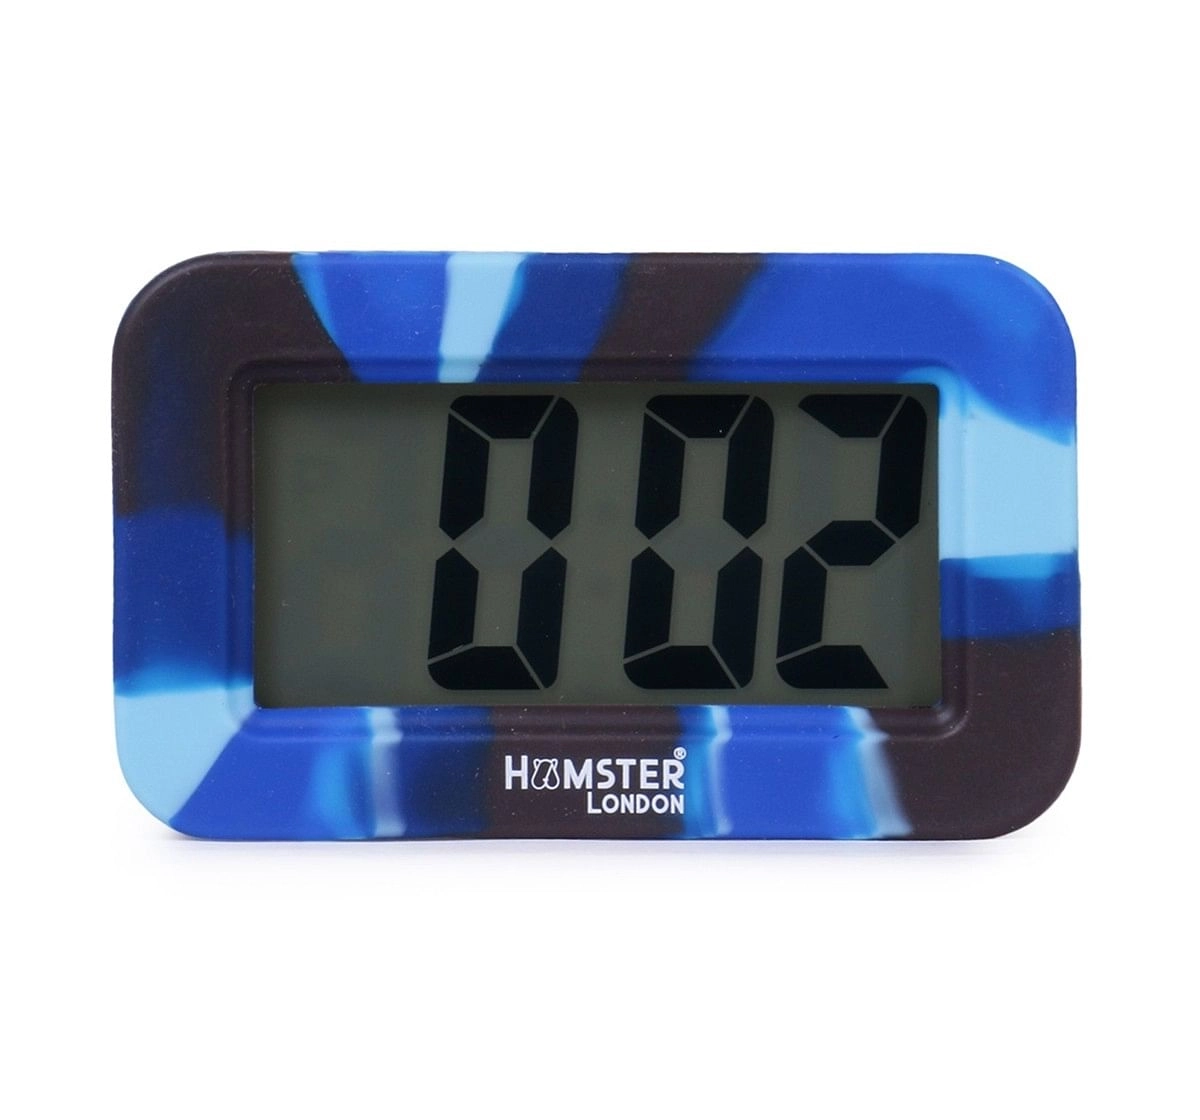 Hamster London Digital Silicon Alarm Clock Blue, 6Y+